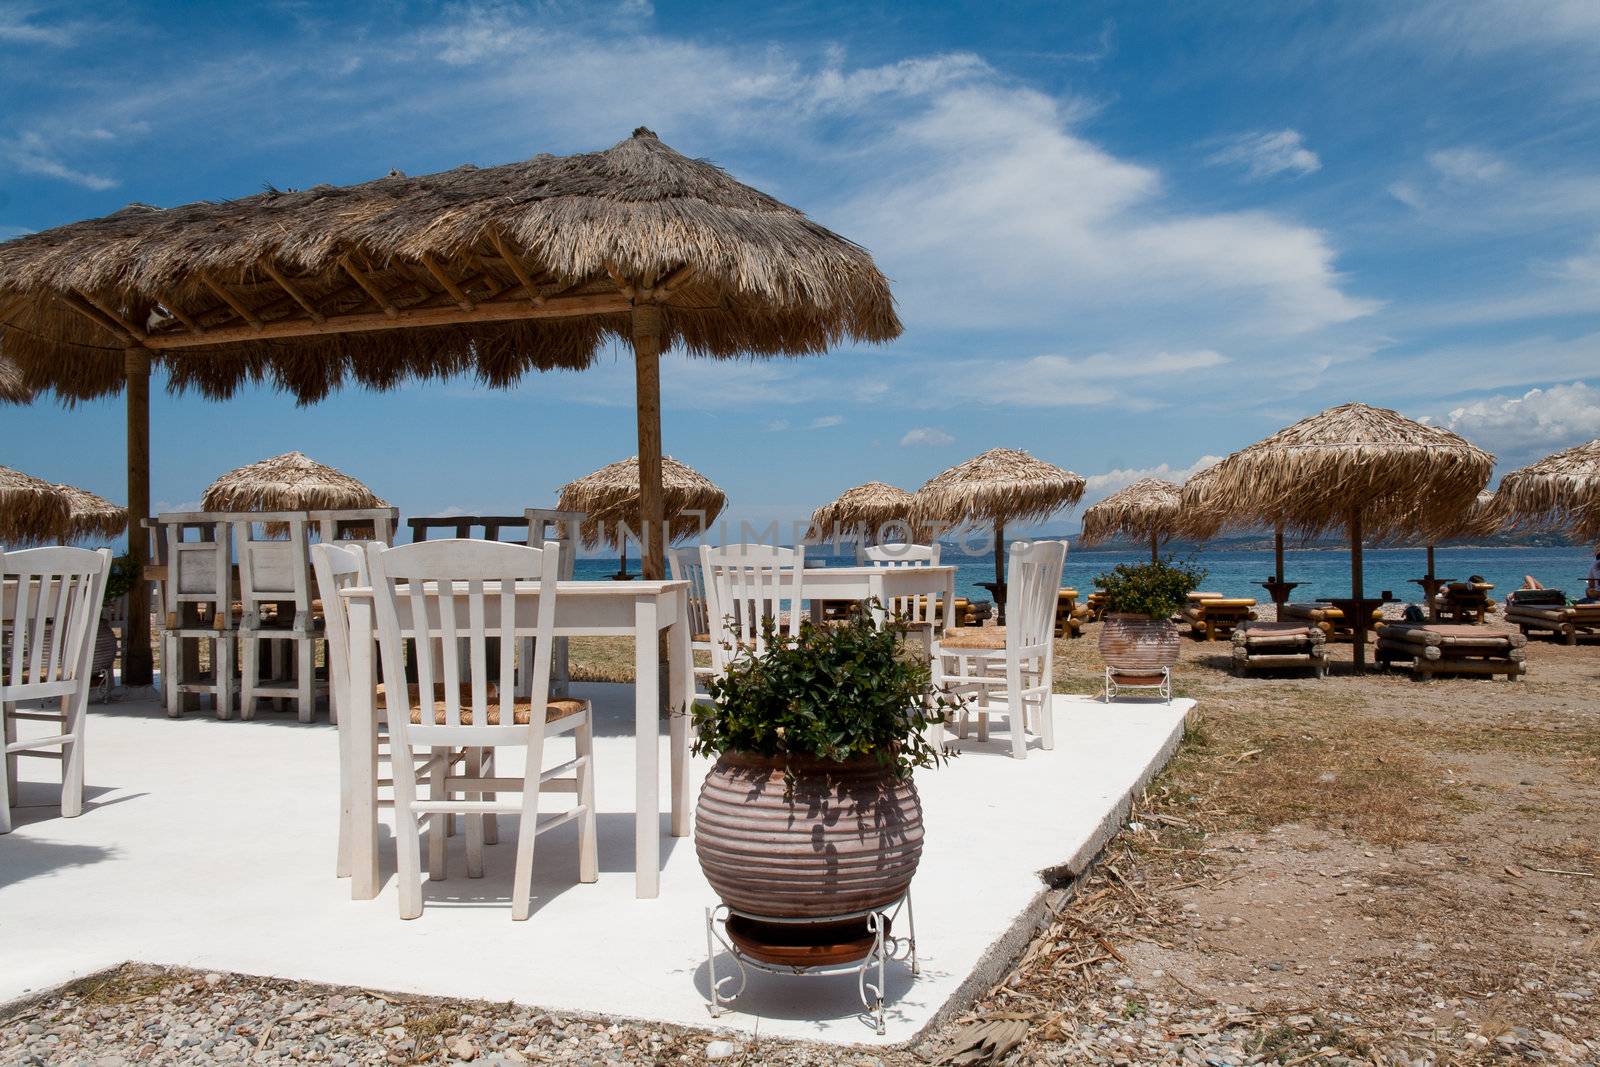 Greek taverna on the beach by vilevi